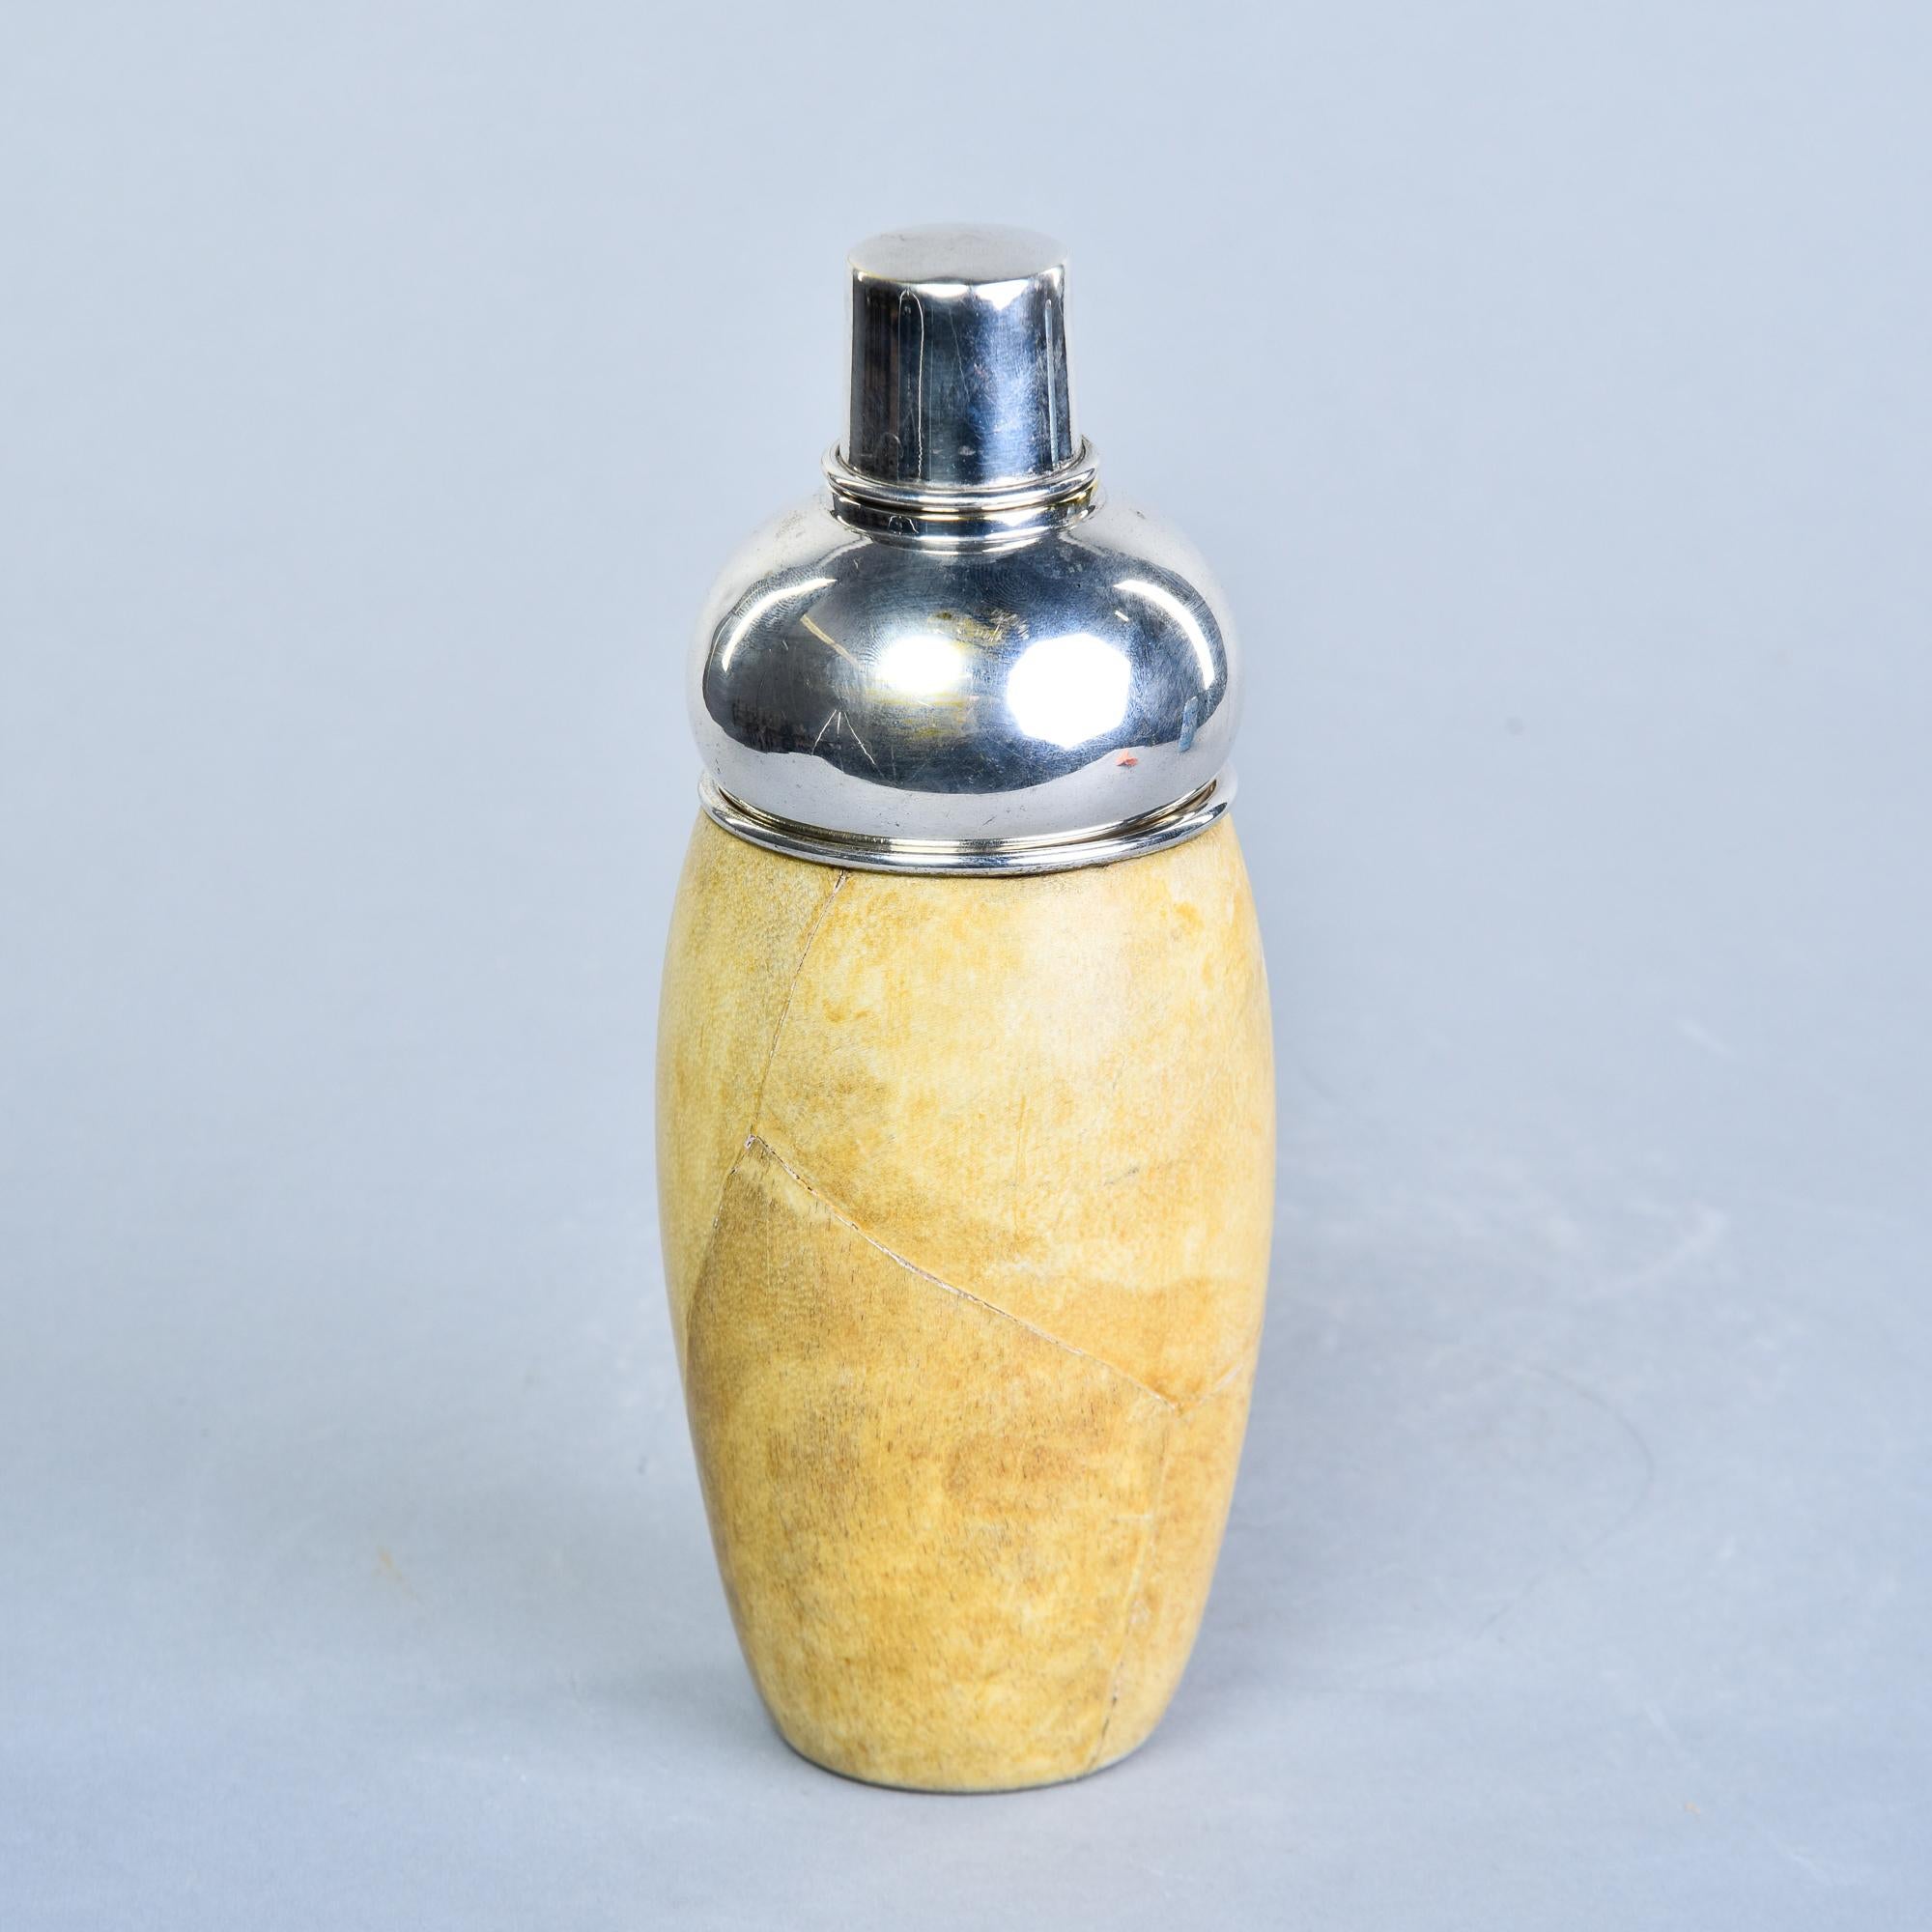 Dieser in Italien gefundene Cocktailshaker von Aldo Tura stammt aus den 1950er Jahren. Der Shaker-Körper besteht aus einer mit Ziegenleder überzogenen Holzschale mit einer Innenauskleidung aus Edelstahl. Abnehmbarer Stahldeckel und Sieb. Leder hat